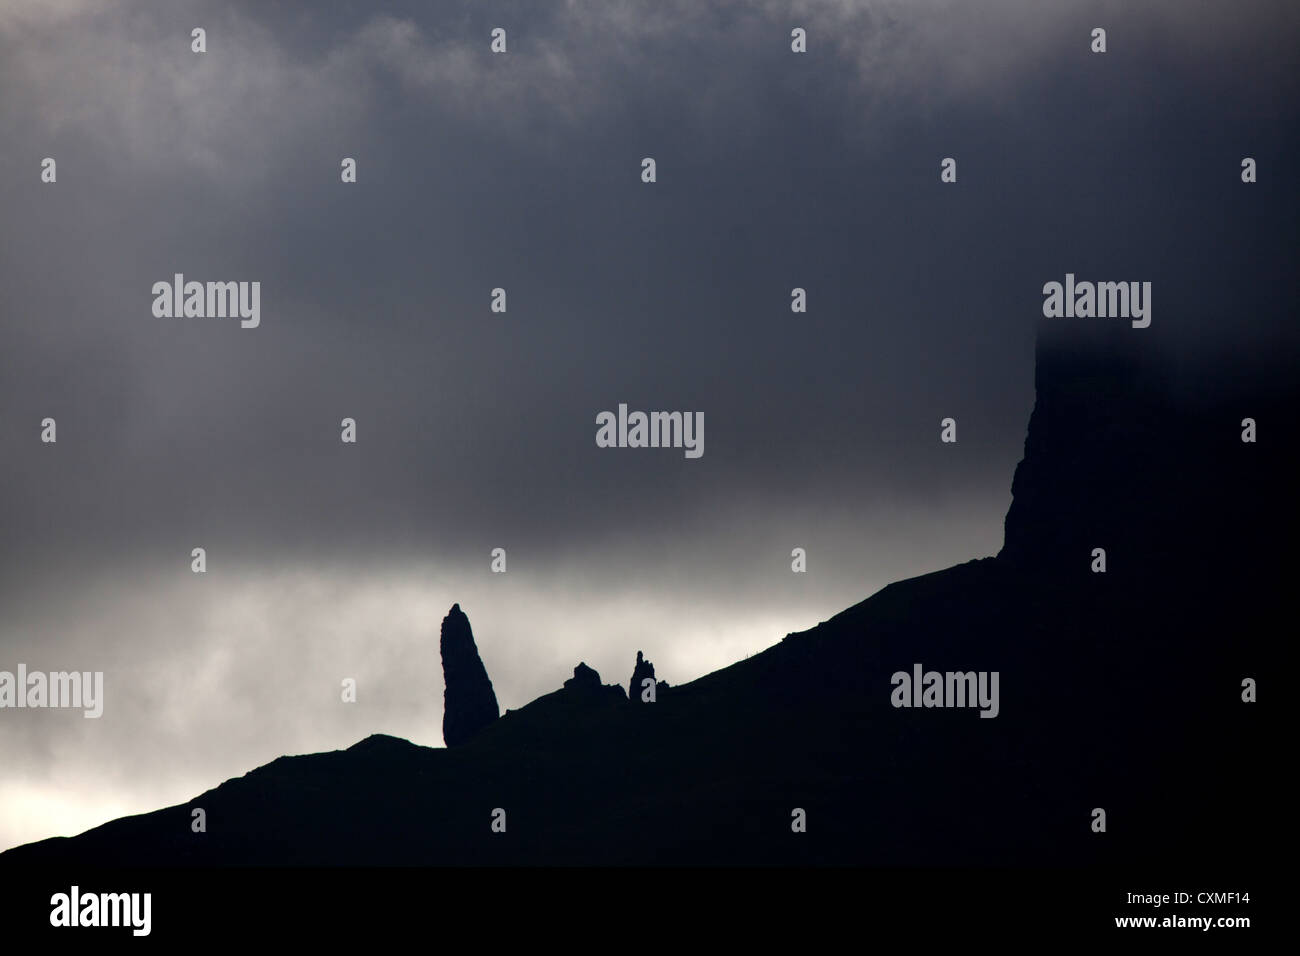 Isle Of Skye, Schottland. Dramatischen Silhouette Blick auf dem Storr-Hügel und der Old Man of Storr auf der nordöstlichen Küste der Insel Skye. Stockfoto